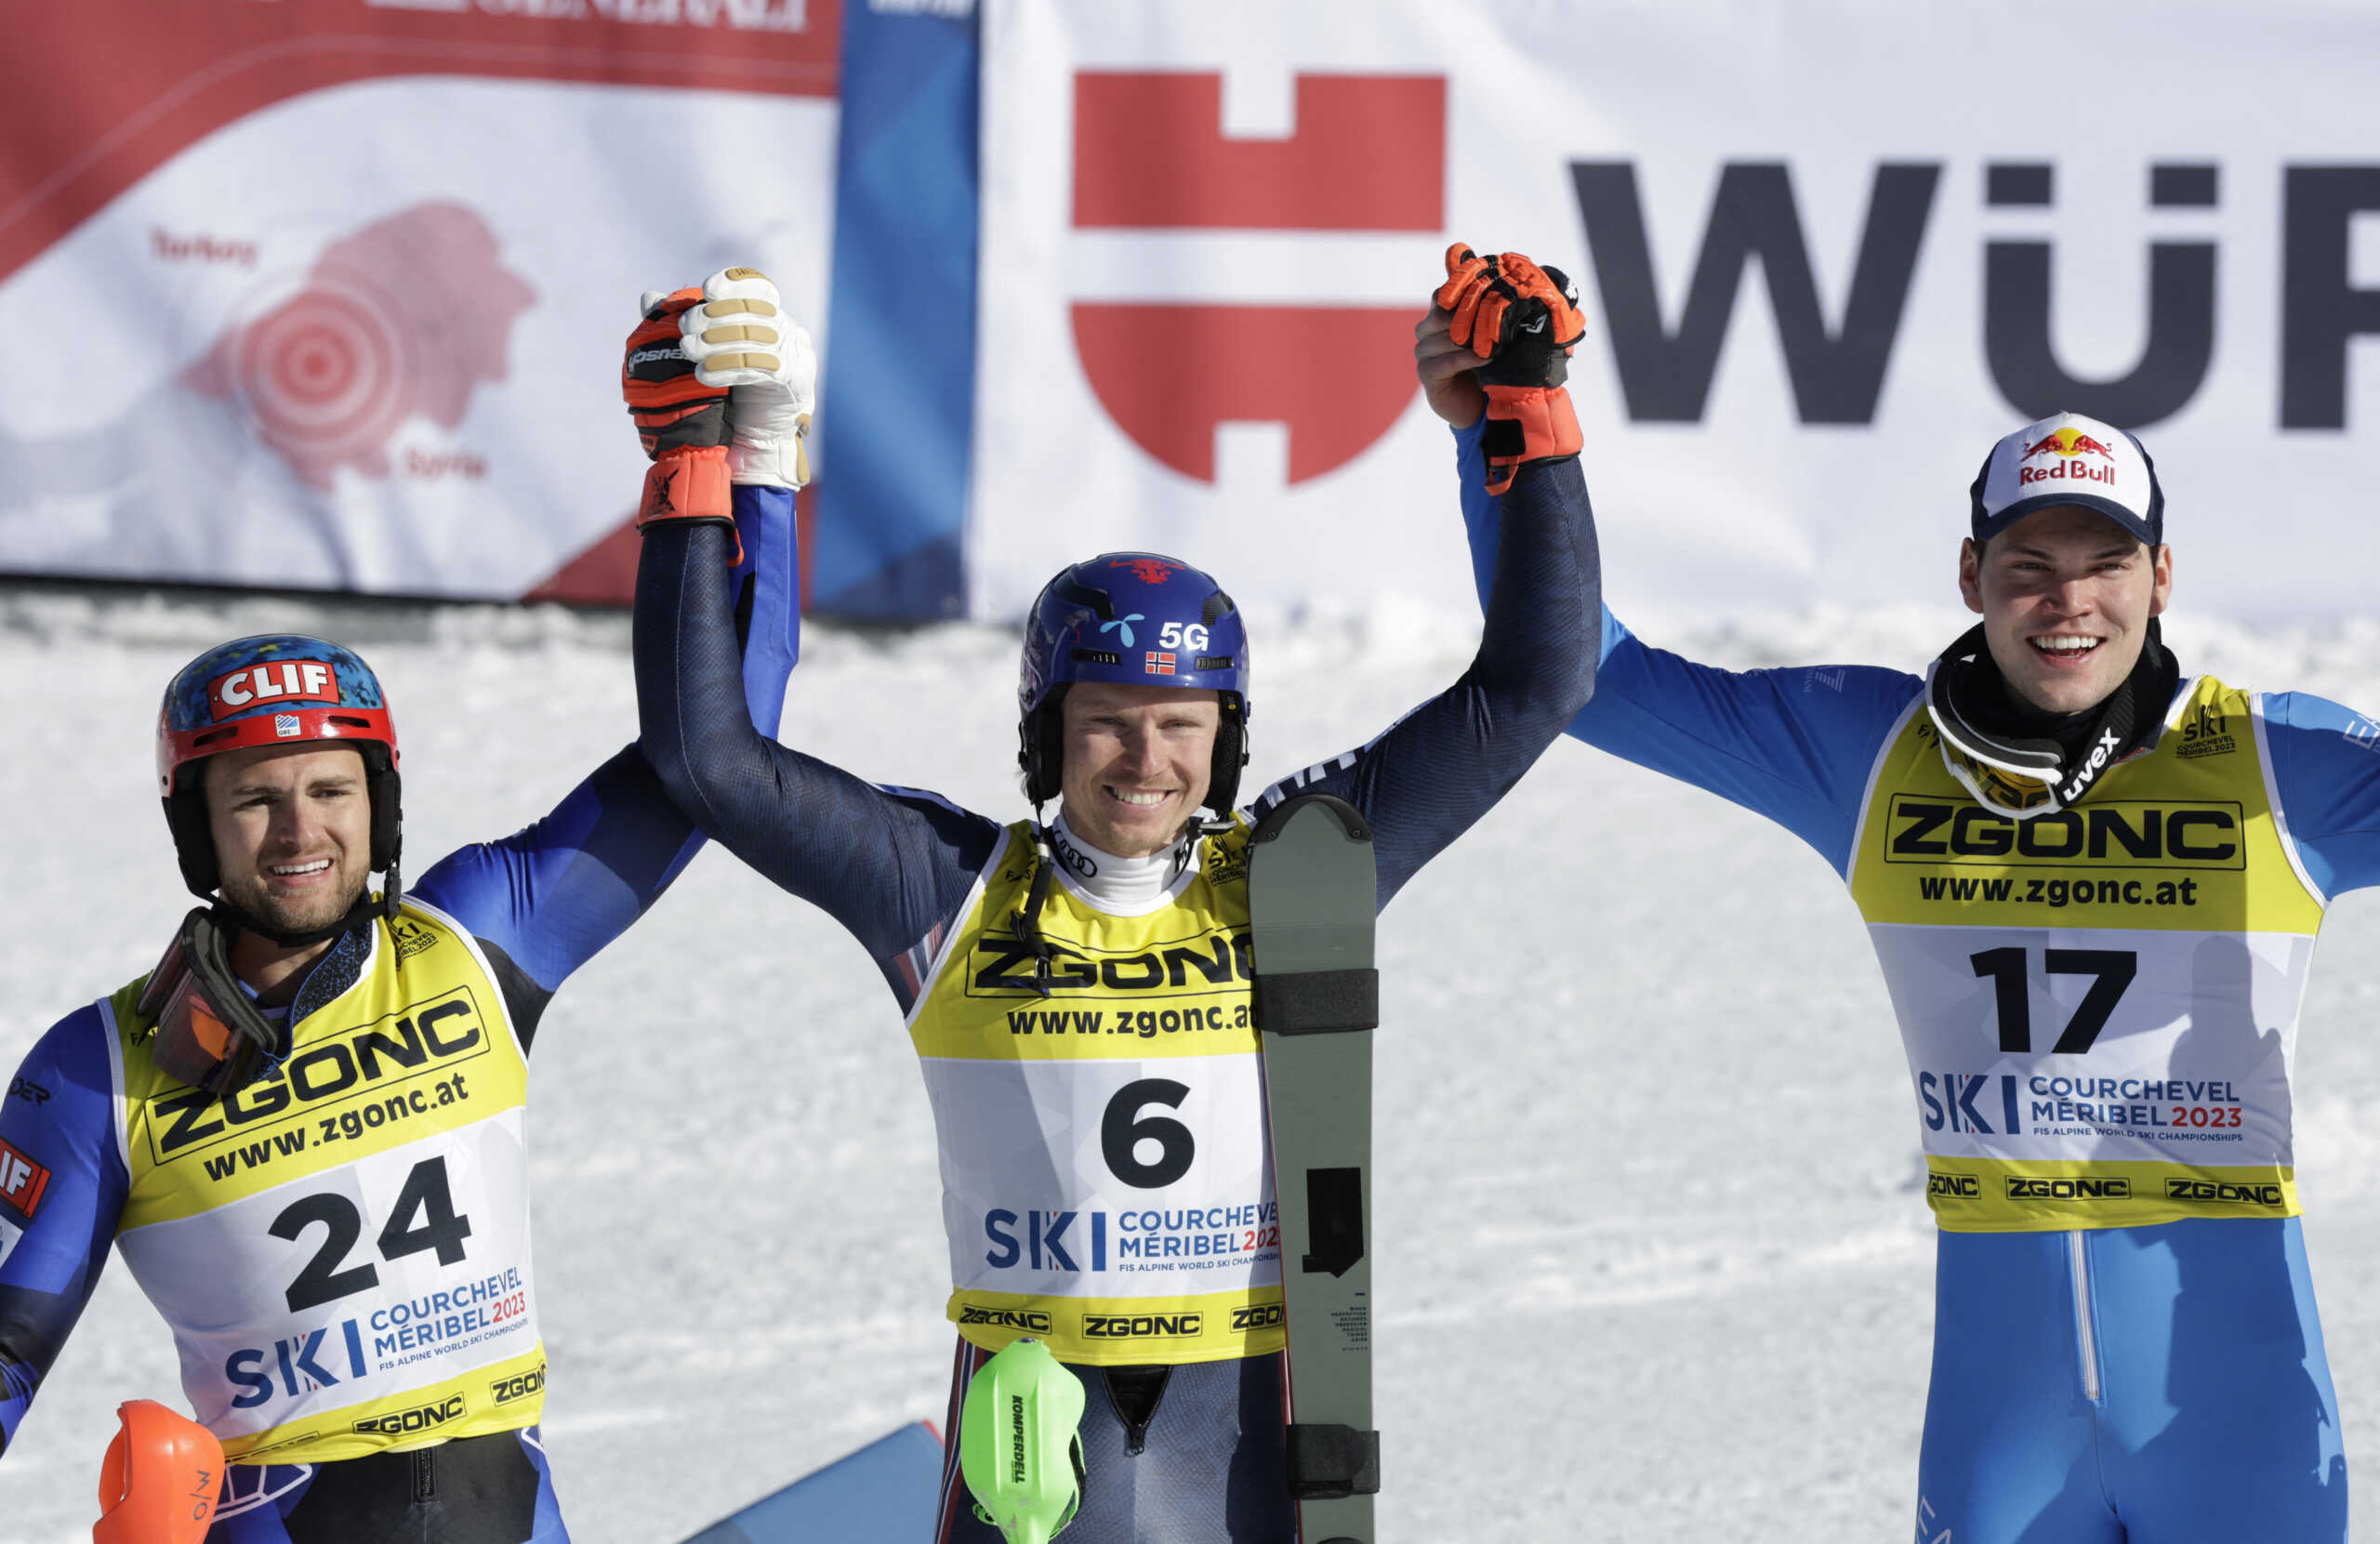 Αλέξανδρος Γκιννής: Ασημένιο μετάλλιο για την Ελλάδα στο Παγκόσμιο Πρωτάθλημα στο αλπικό σκι